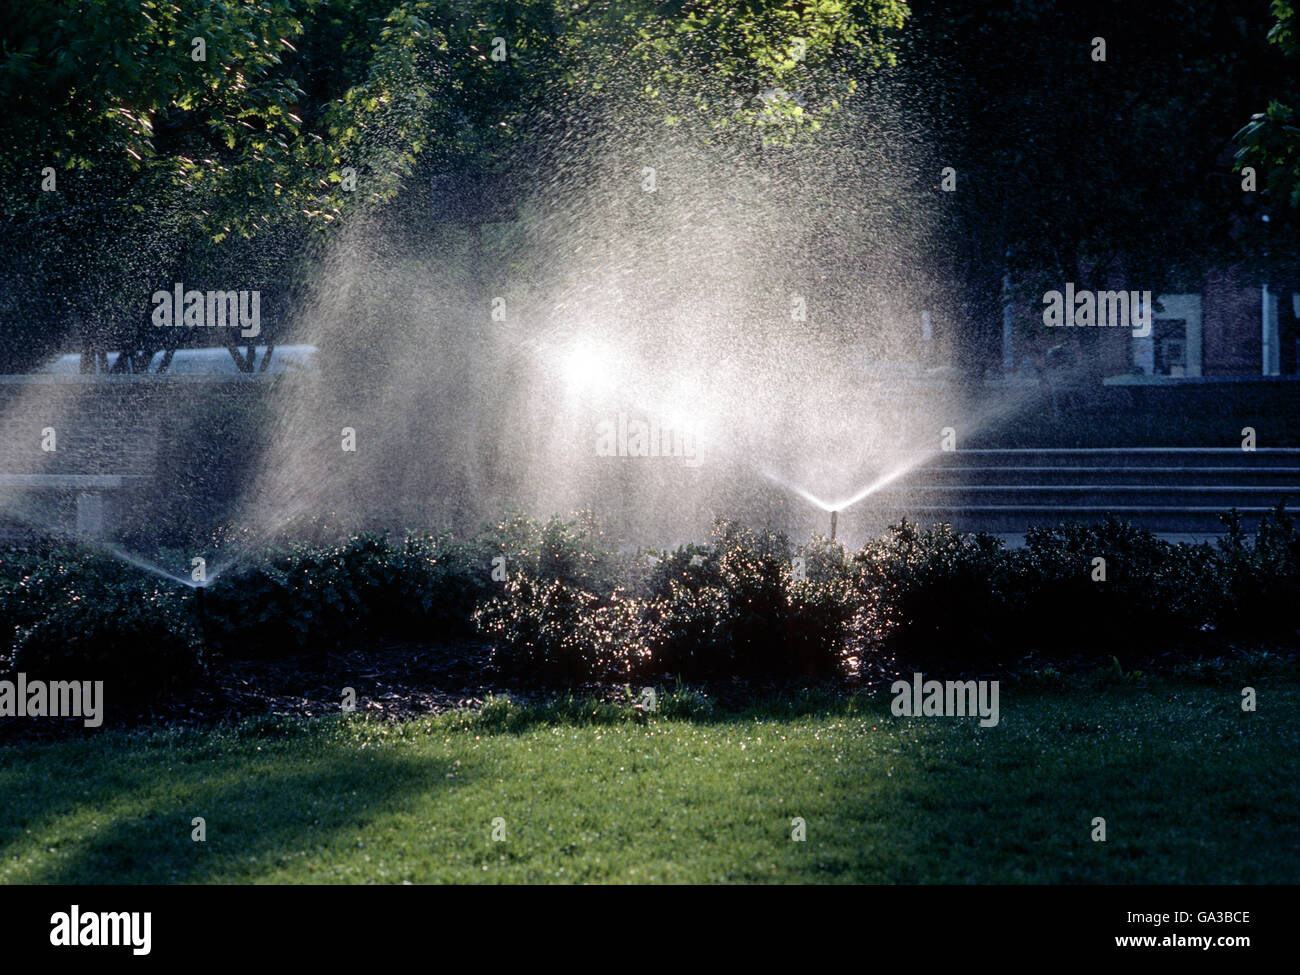 Gli sprinkler irrigazione di giardini e di erba Foto Stock